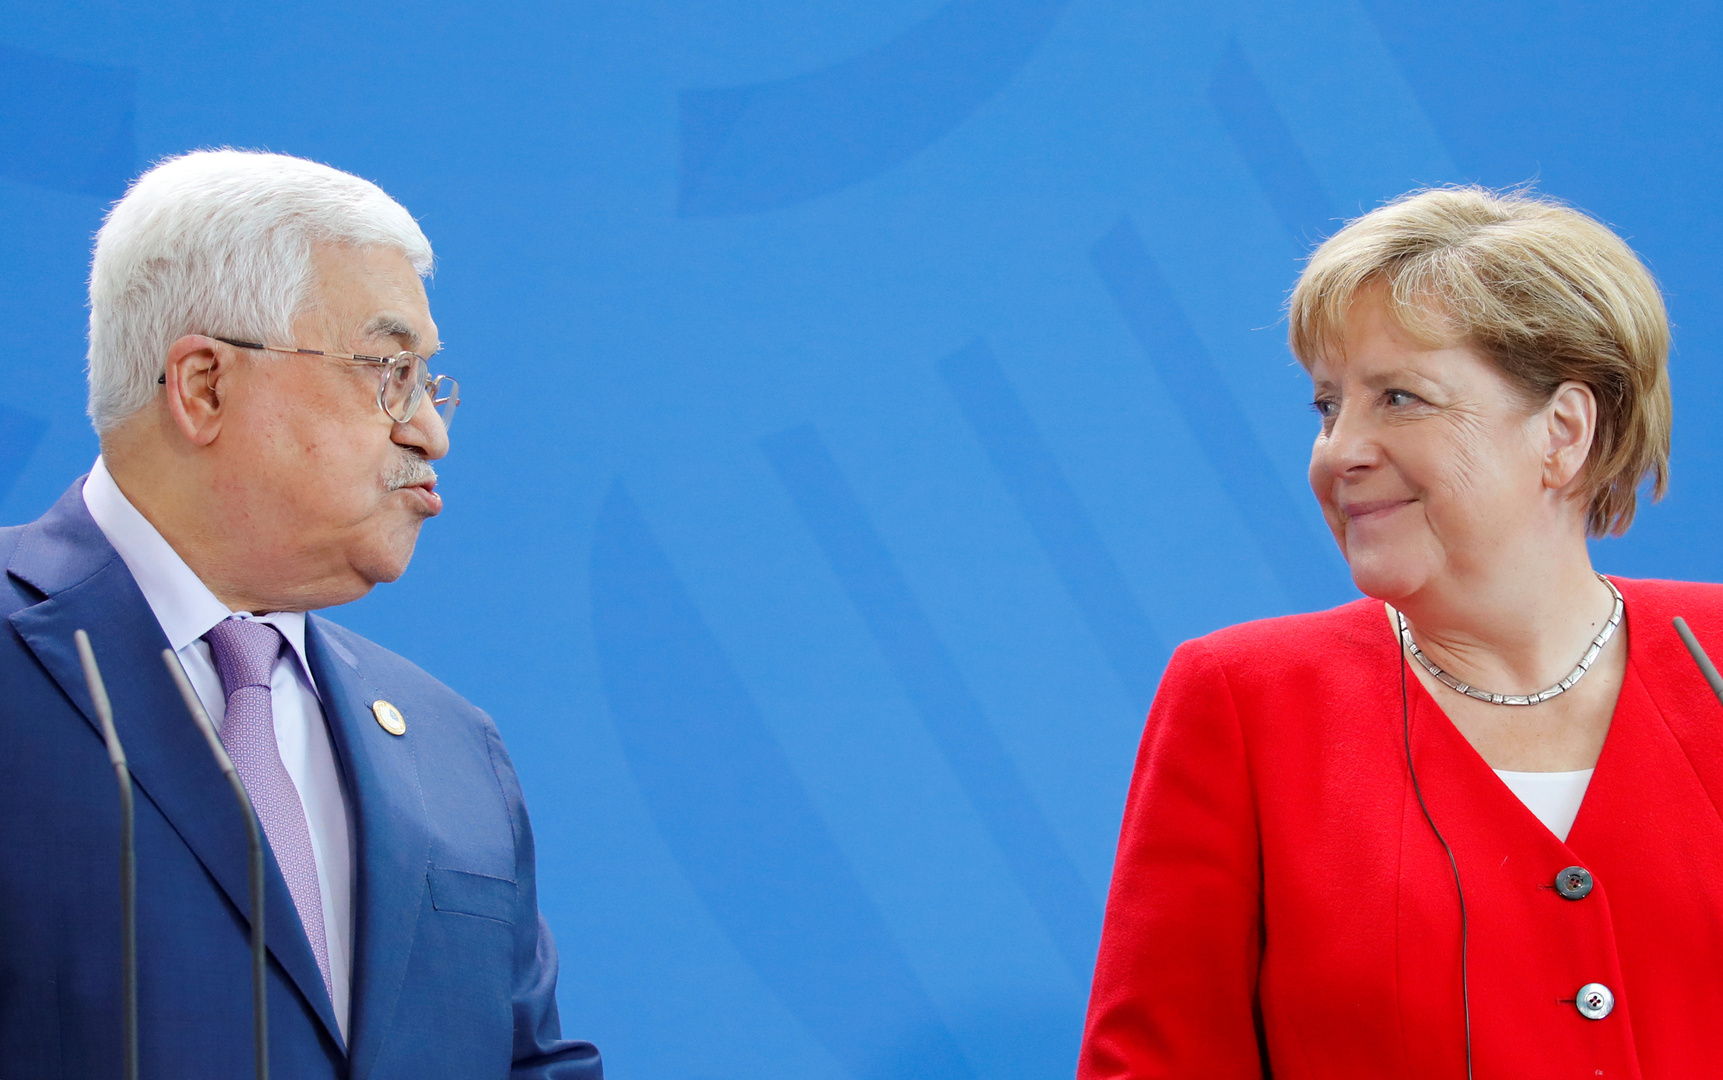 الحكومة الألمانية: ميركل لم تلتق عباس بسبب جدول عملها المزدحم وجائحة كورونا